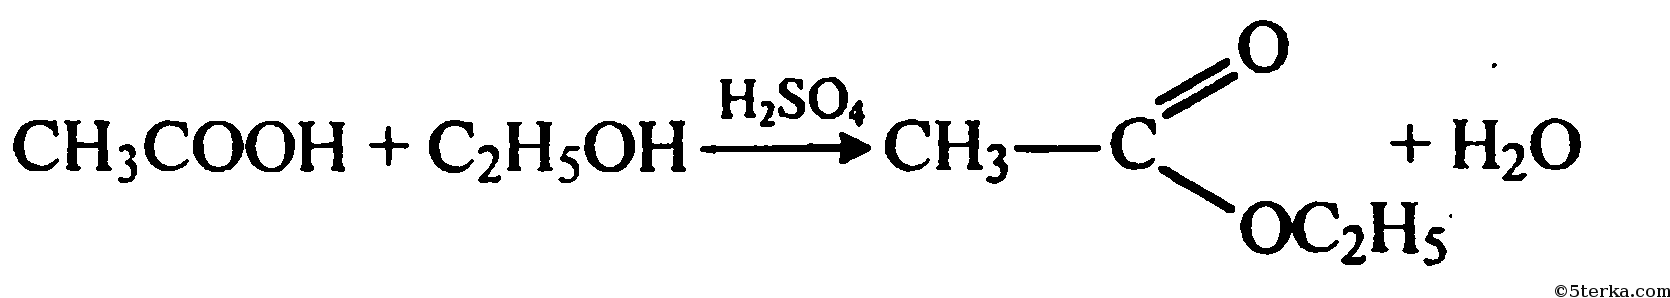 Из этанали в уксусную кислоту. Окисление метанола на Медном катализаторе. Уксусный альдегид и гидроксид меди 2. Уксусный альдегид плюс гидроксид меди 2.